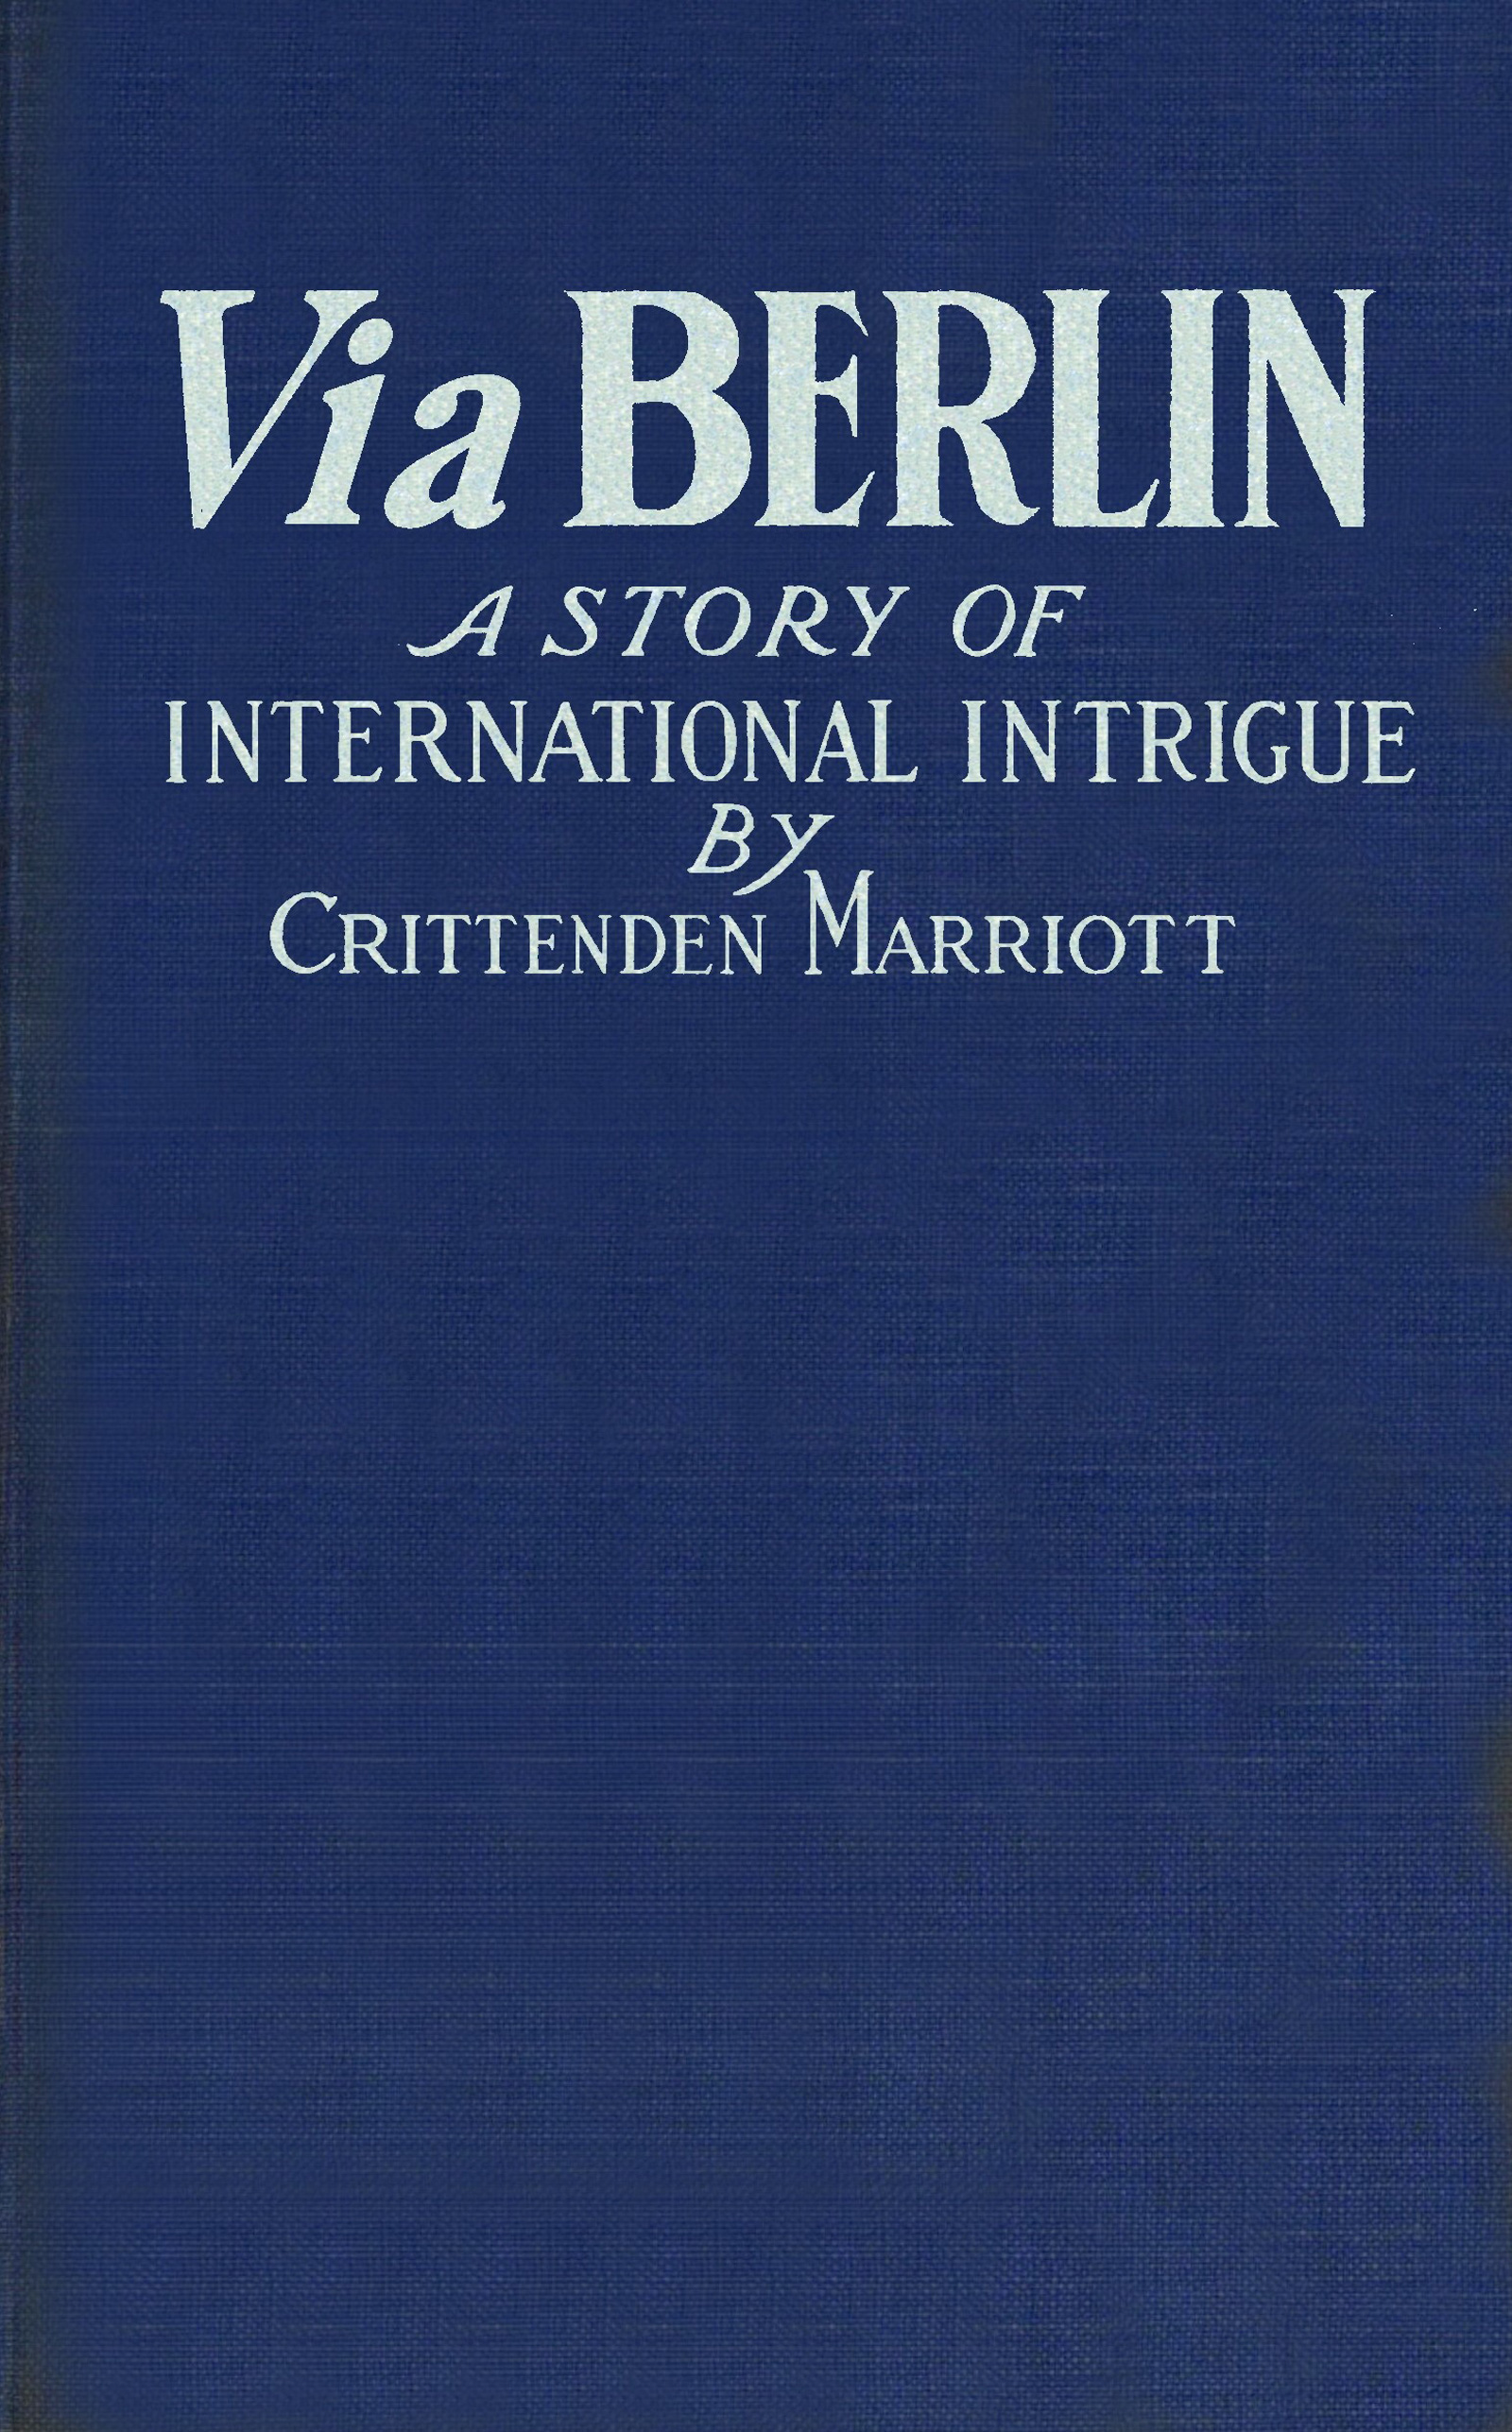 Via Berlin, by Crittenden Marriott—A Project Gutenberg eBook